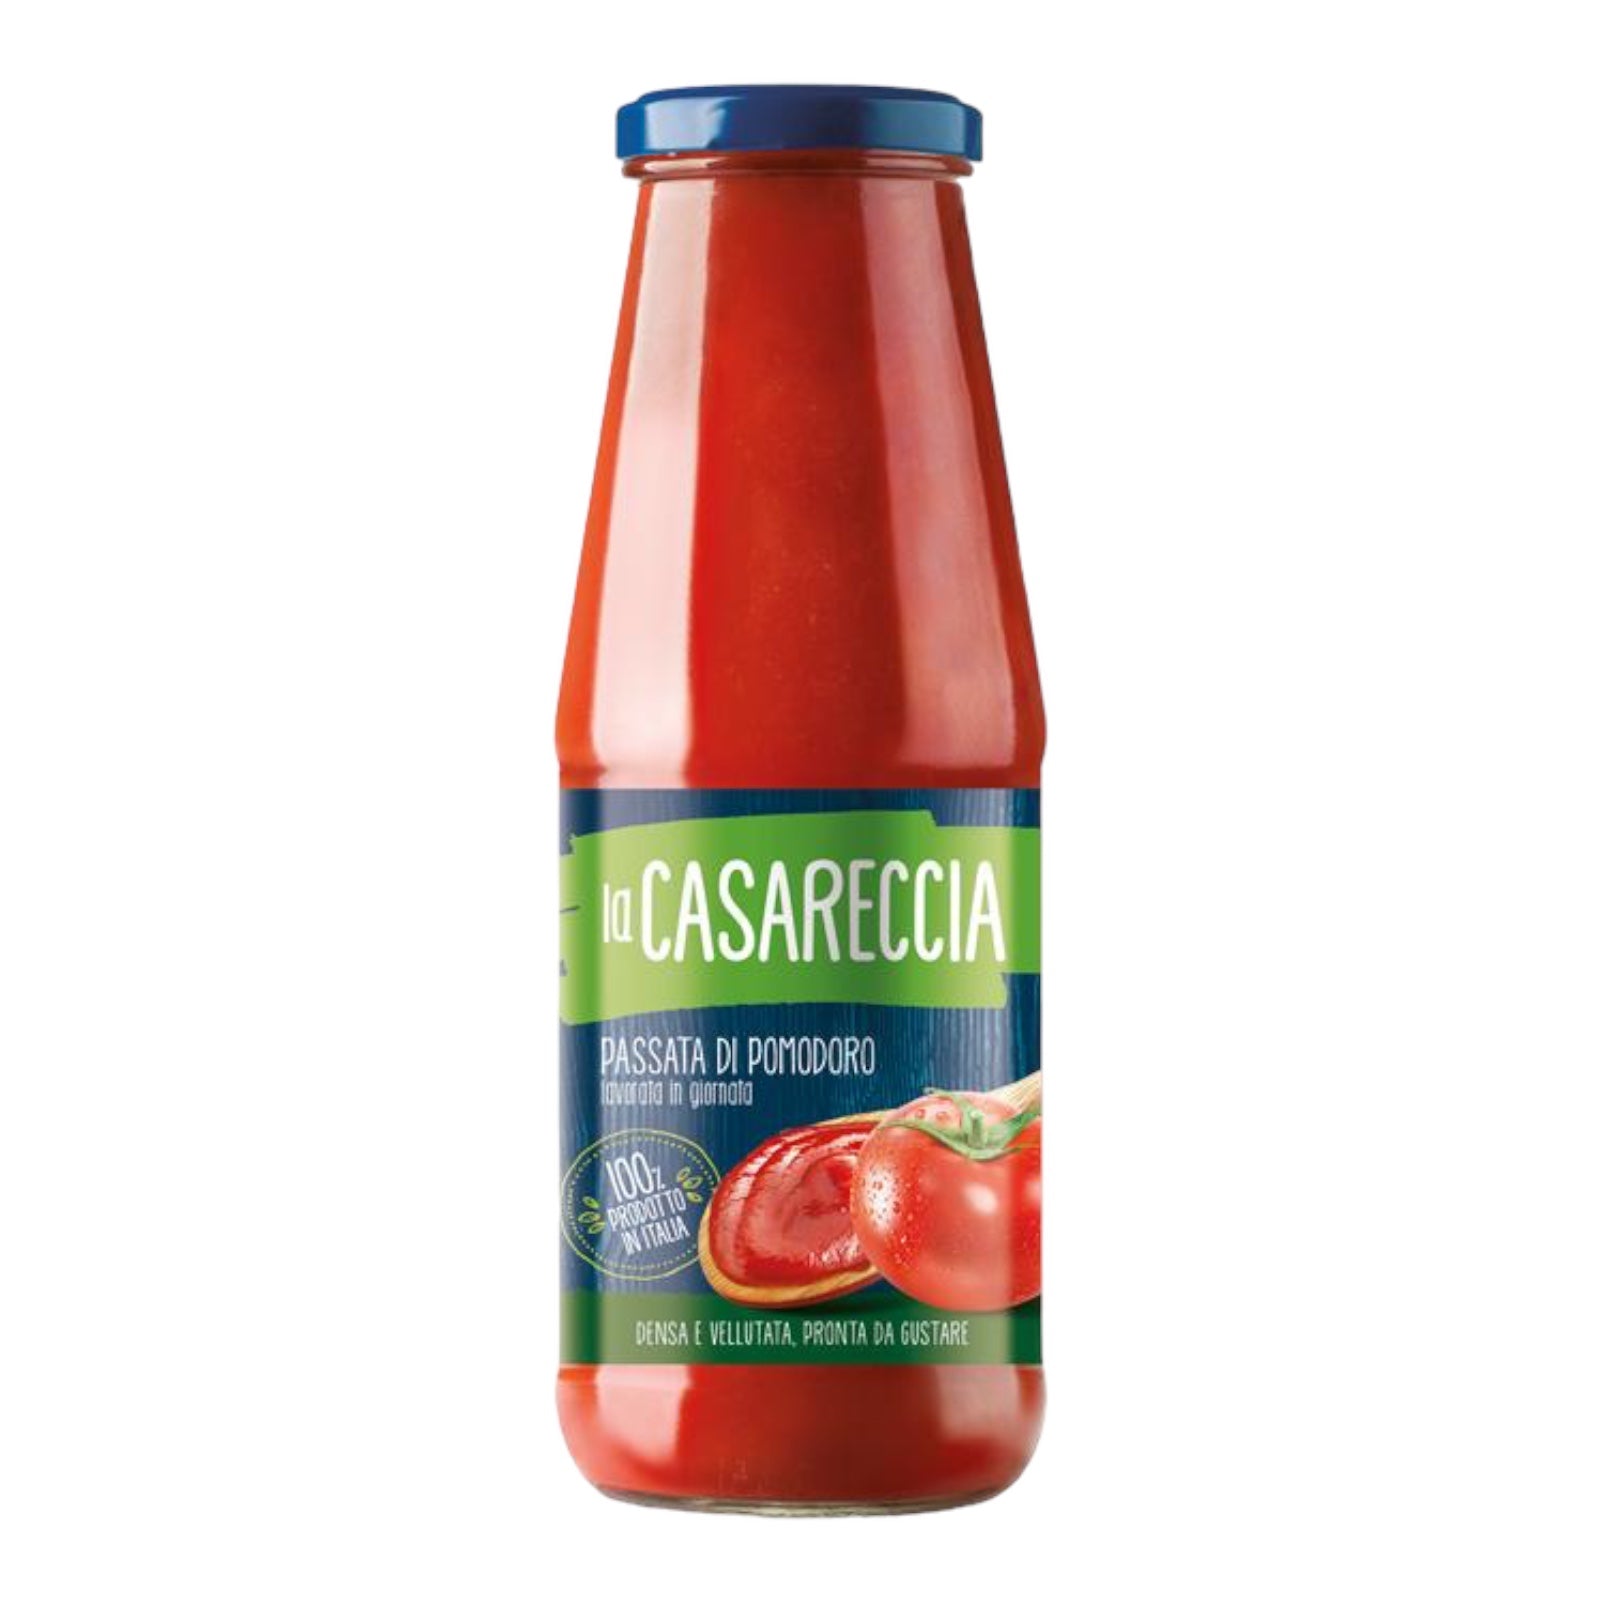 La Casareccia Passata di Pomodoro Tomato Puree 700g